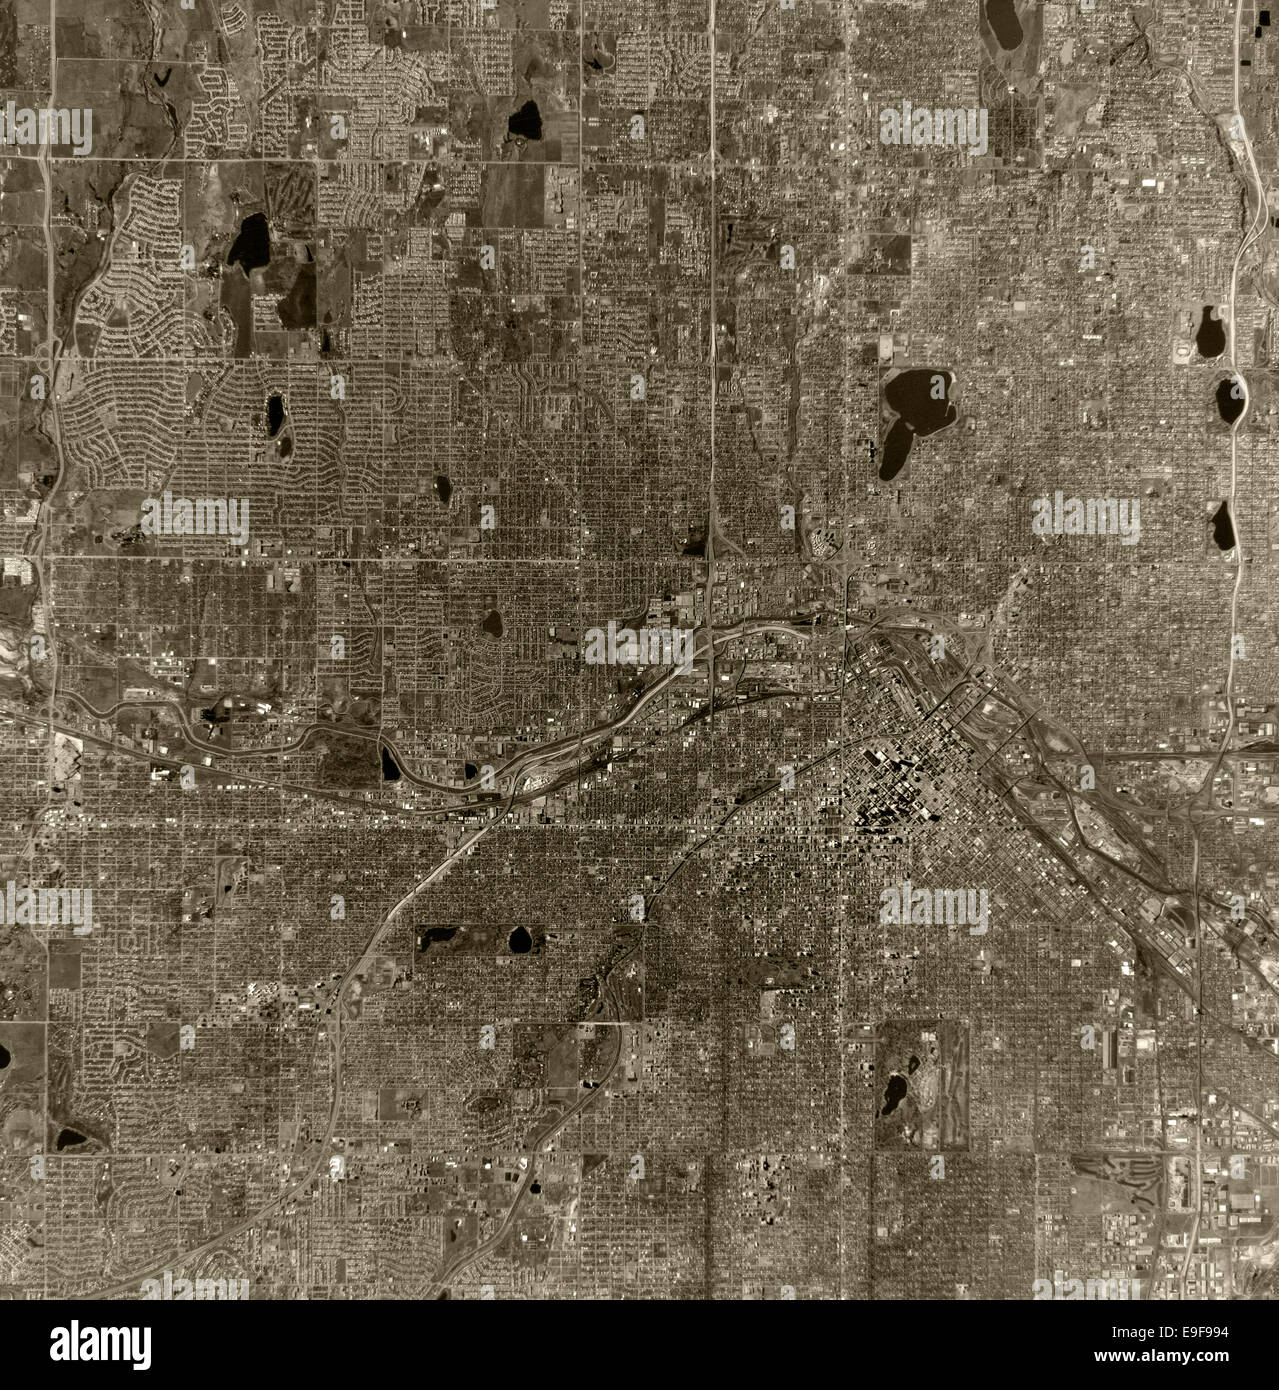 Fotografía aérea histórica de Denver, Colorado, 1970 Foto de stock